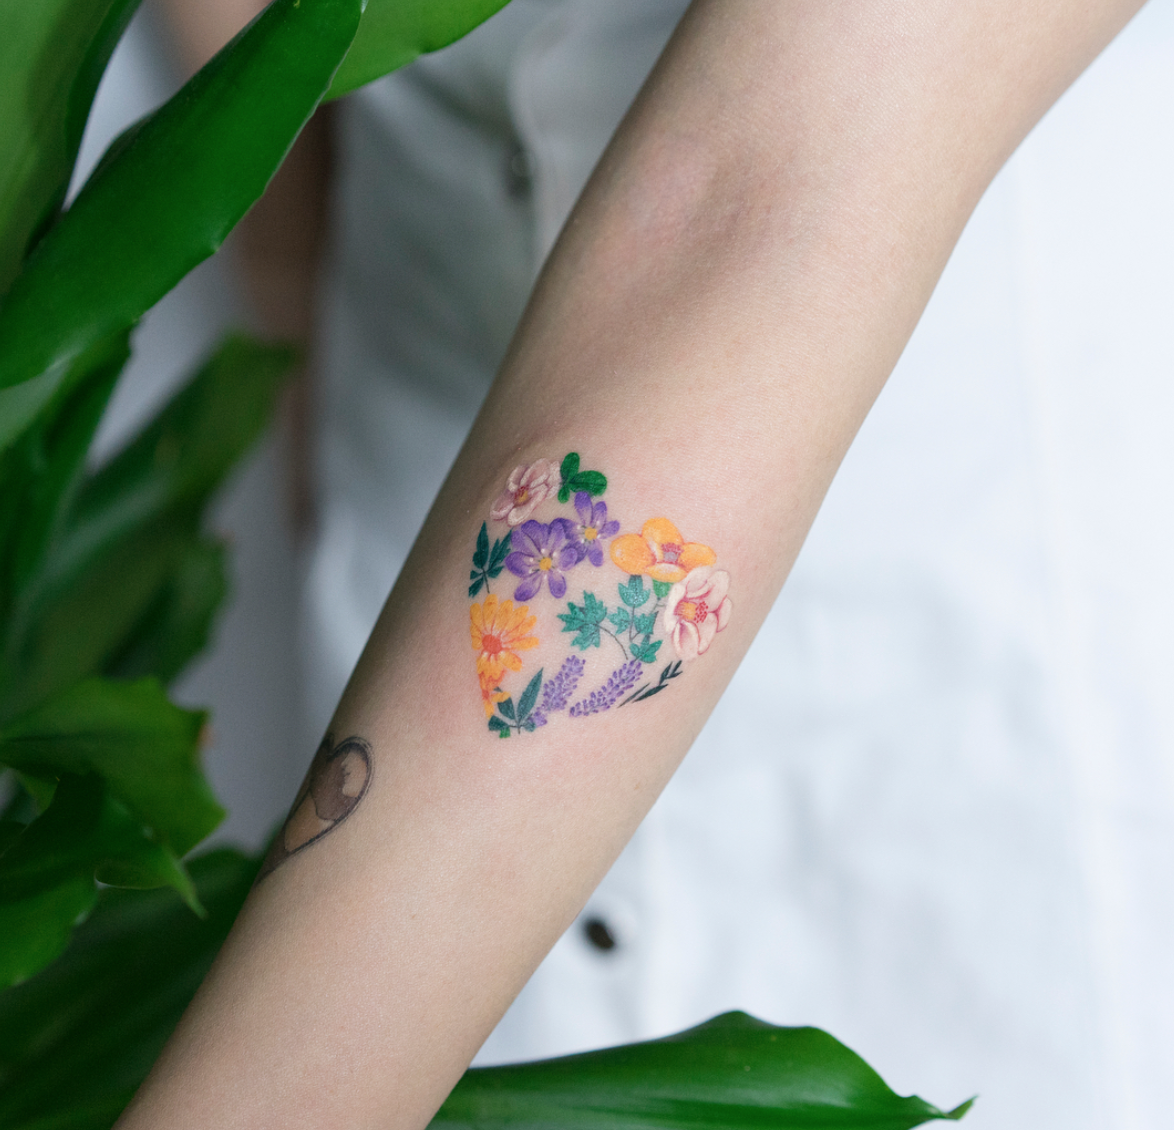 壁纸丨这个韩国纹身师的画风太可爱了吧！_凤凰网时尚_凤凰网